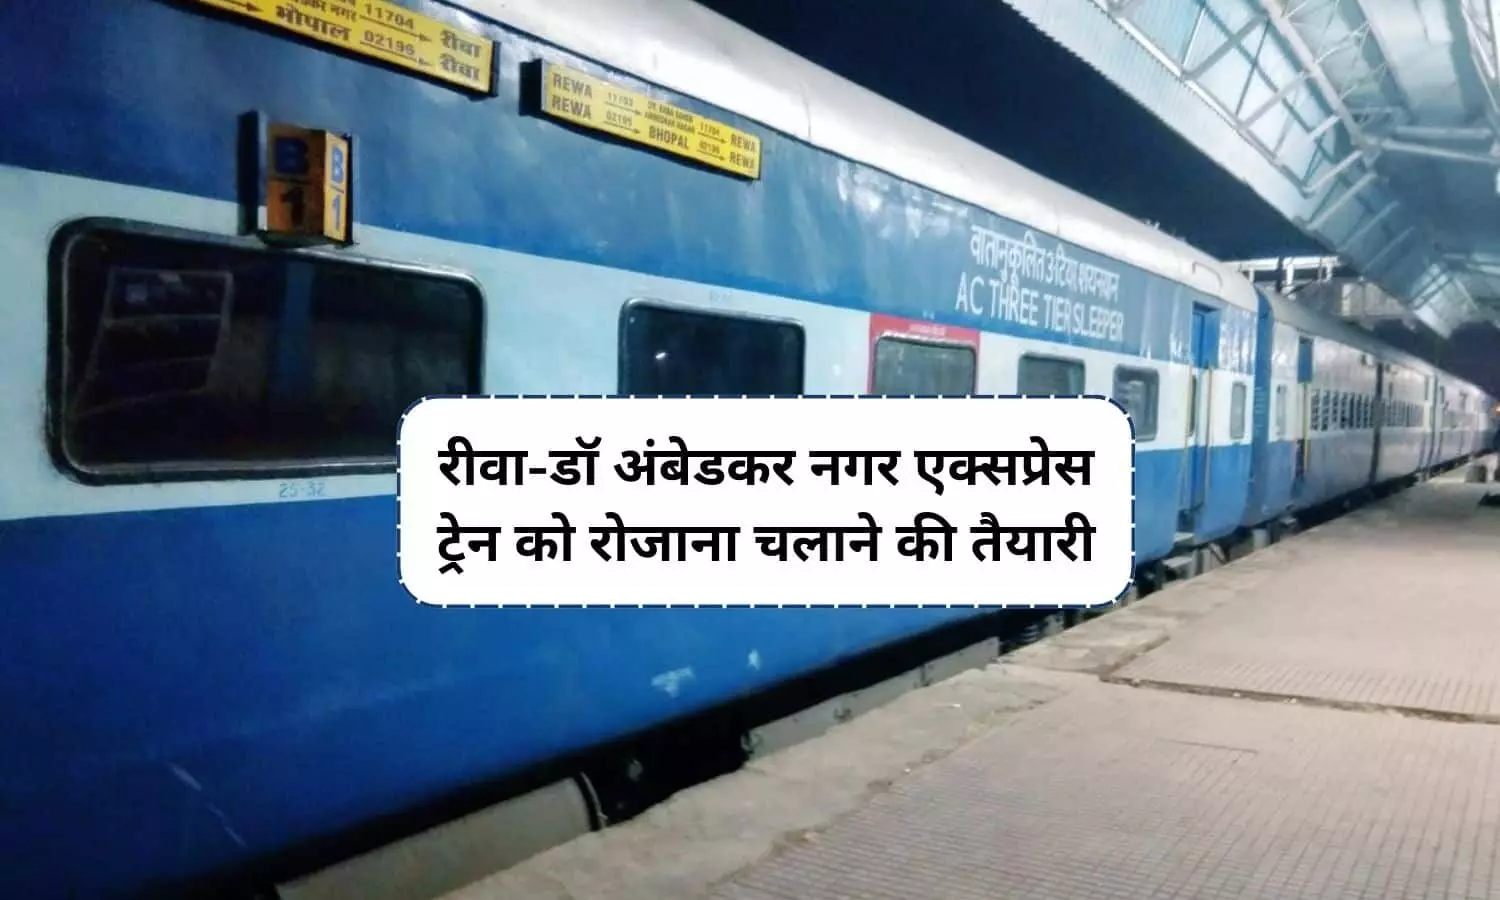 बड़ी खबर: रीवा-इंदौर डॉ अंबेडकर नगर एक्सप्रेस ट्रेन को रोजाना चलाने की तैयारी, जानें क्या है UPDATE?